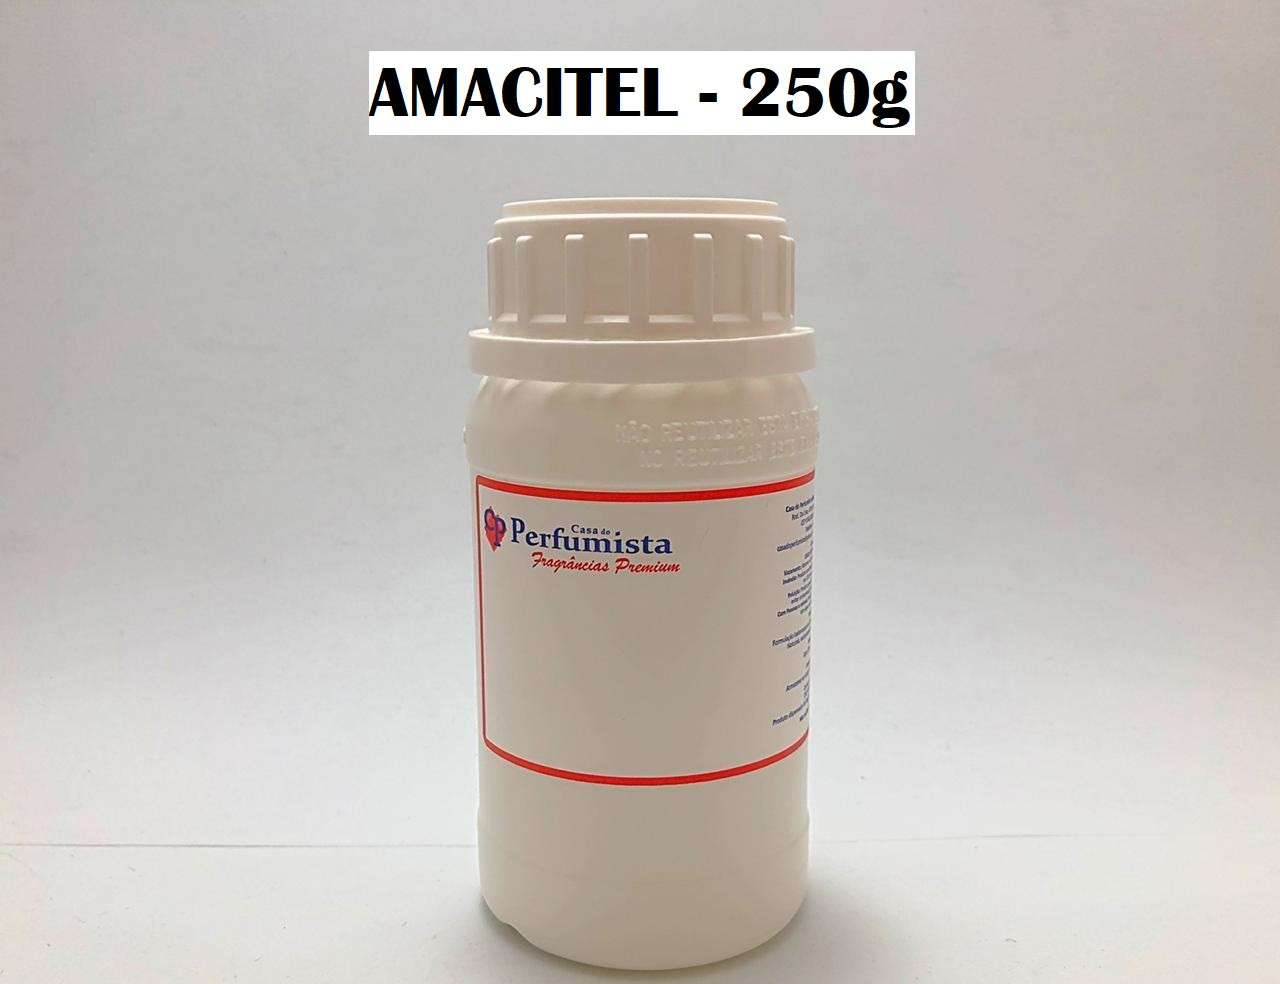 AMACITEL - 250g